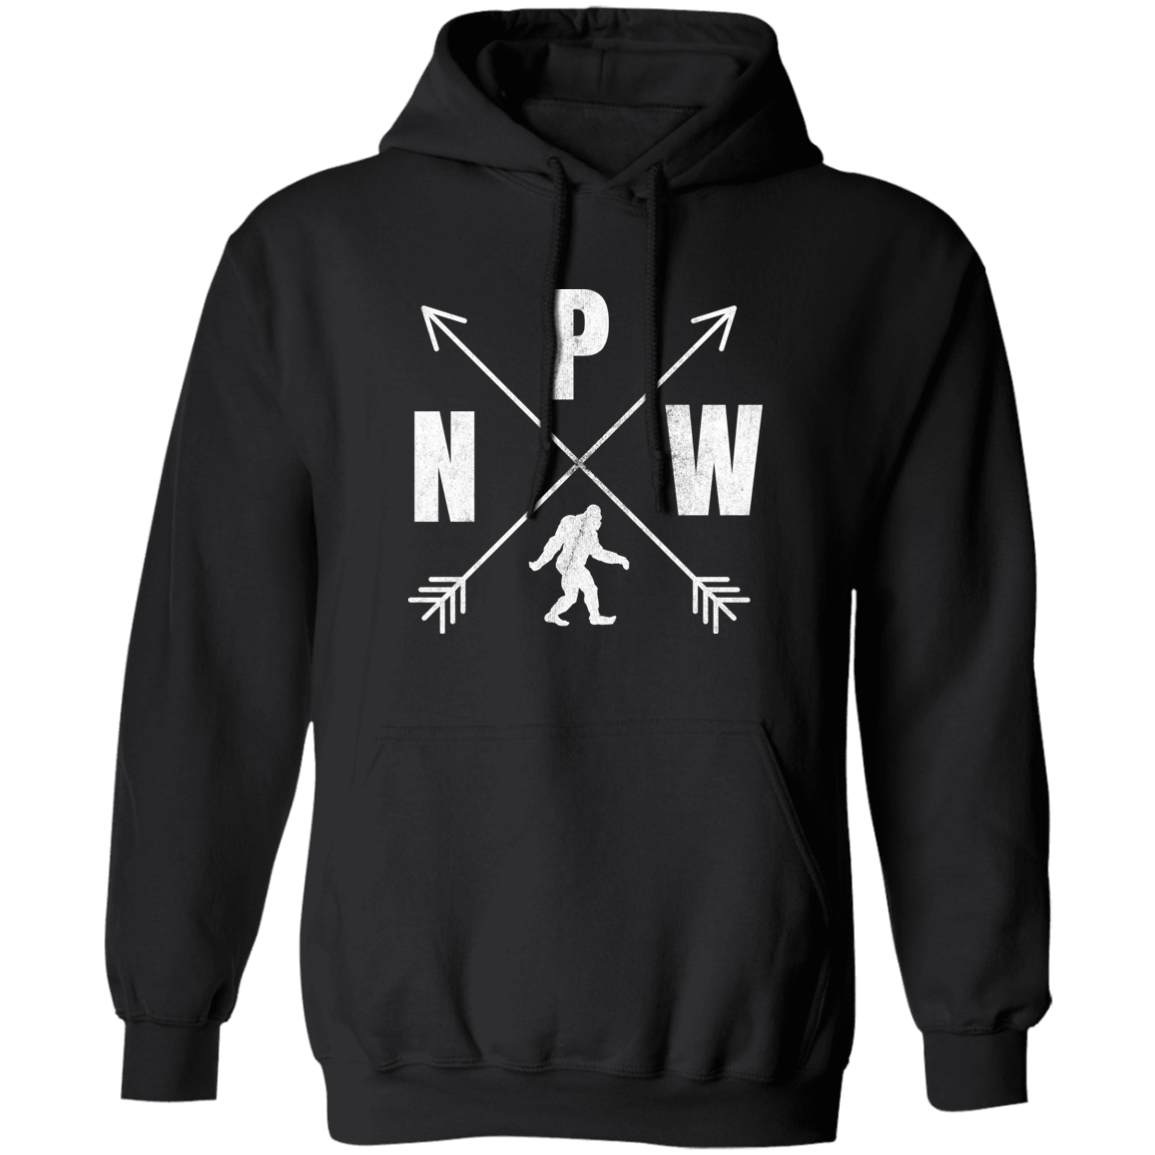 black PNW crossed arrows Bigfoot hoodie for adults 